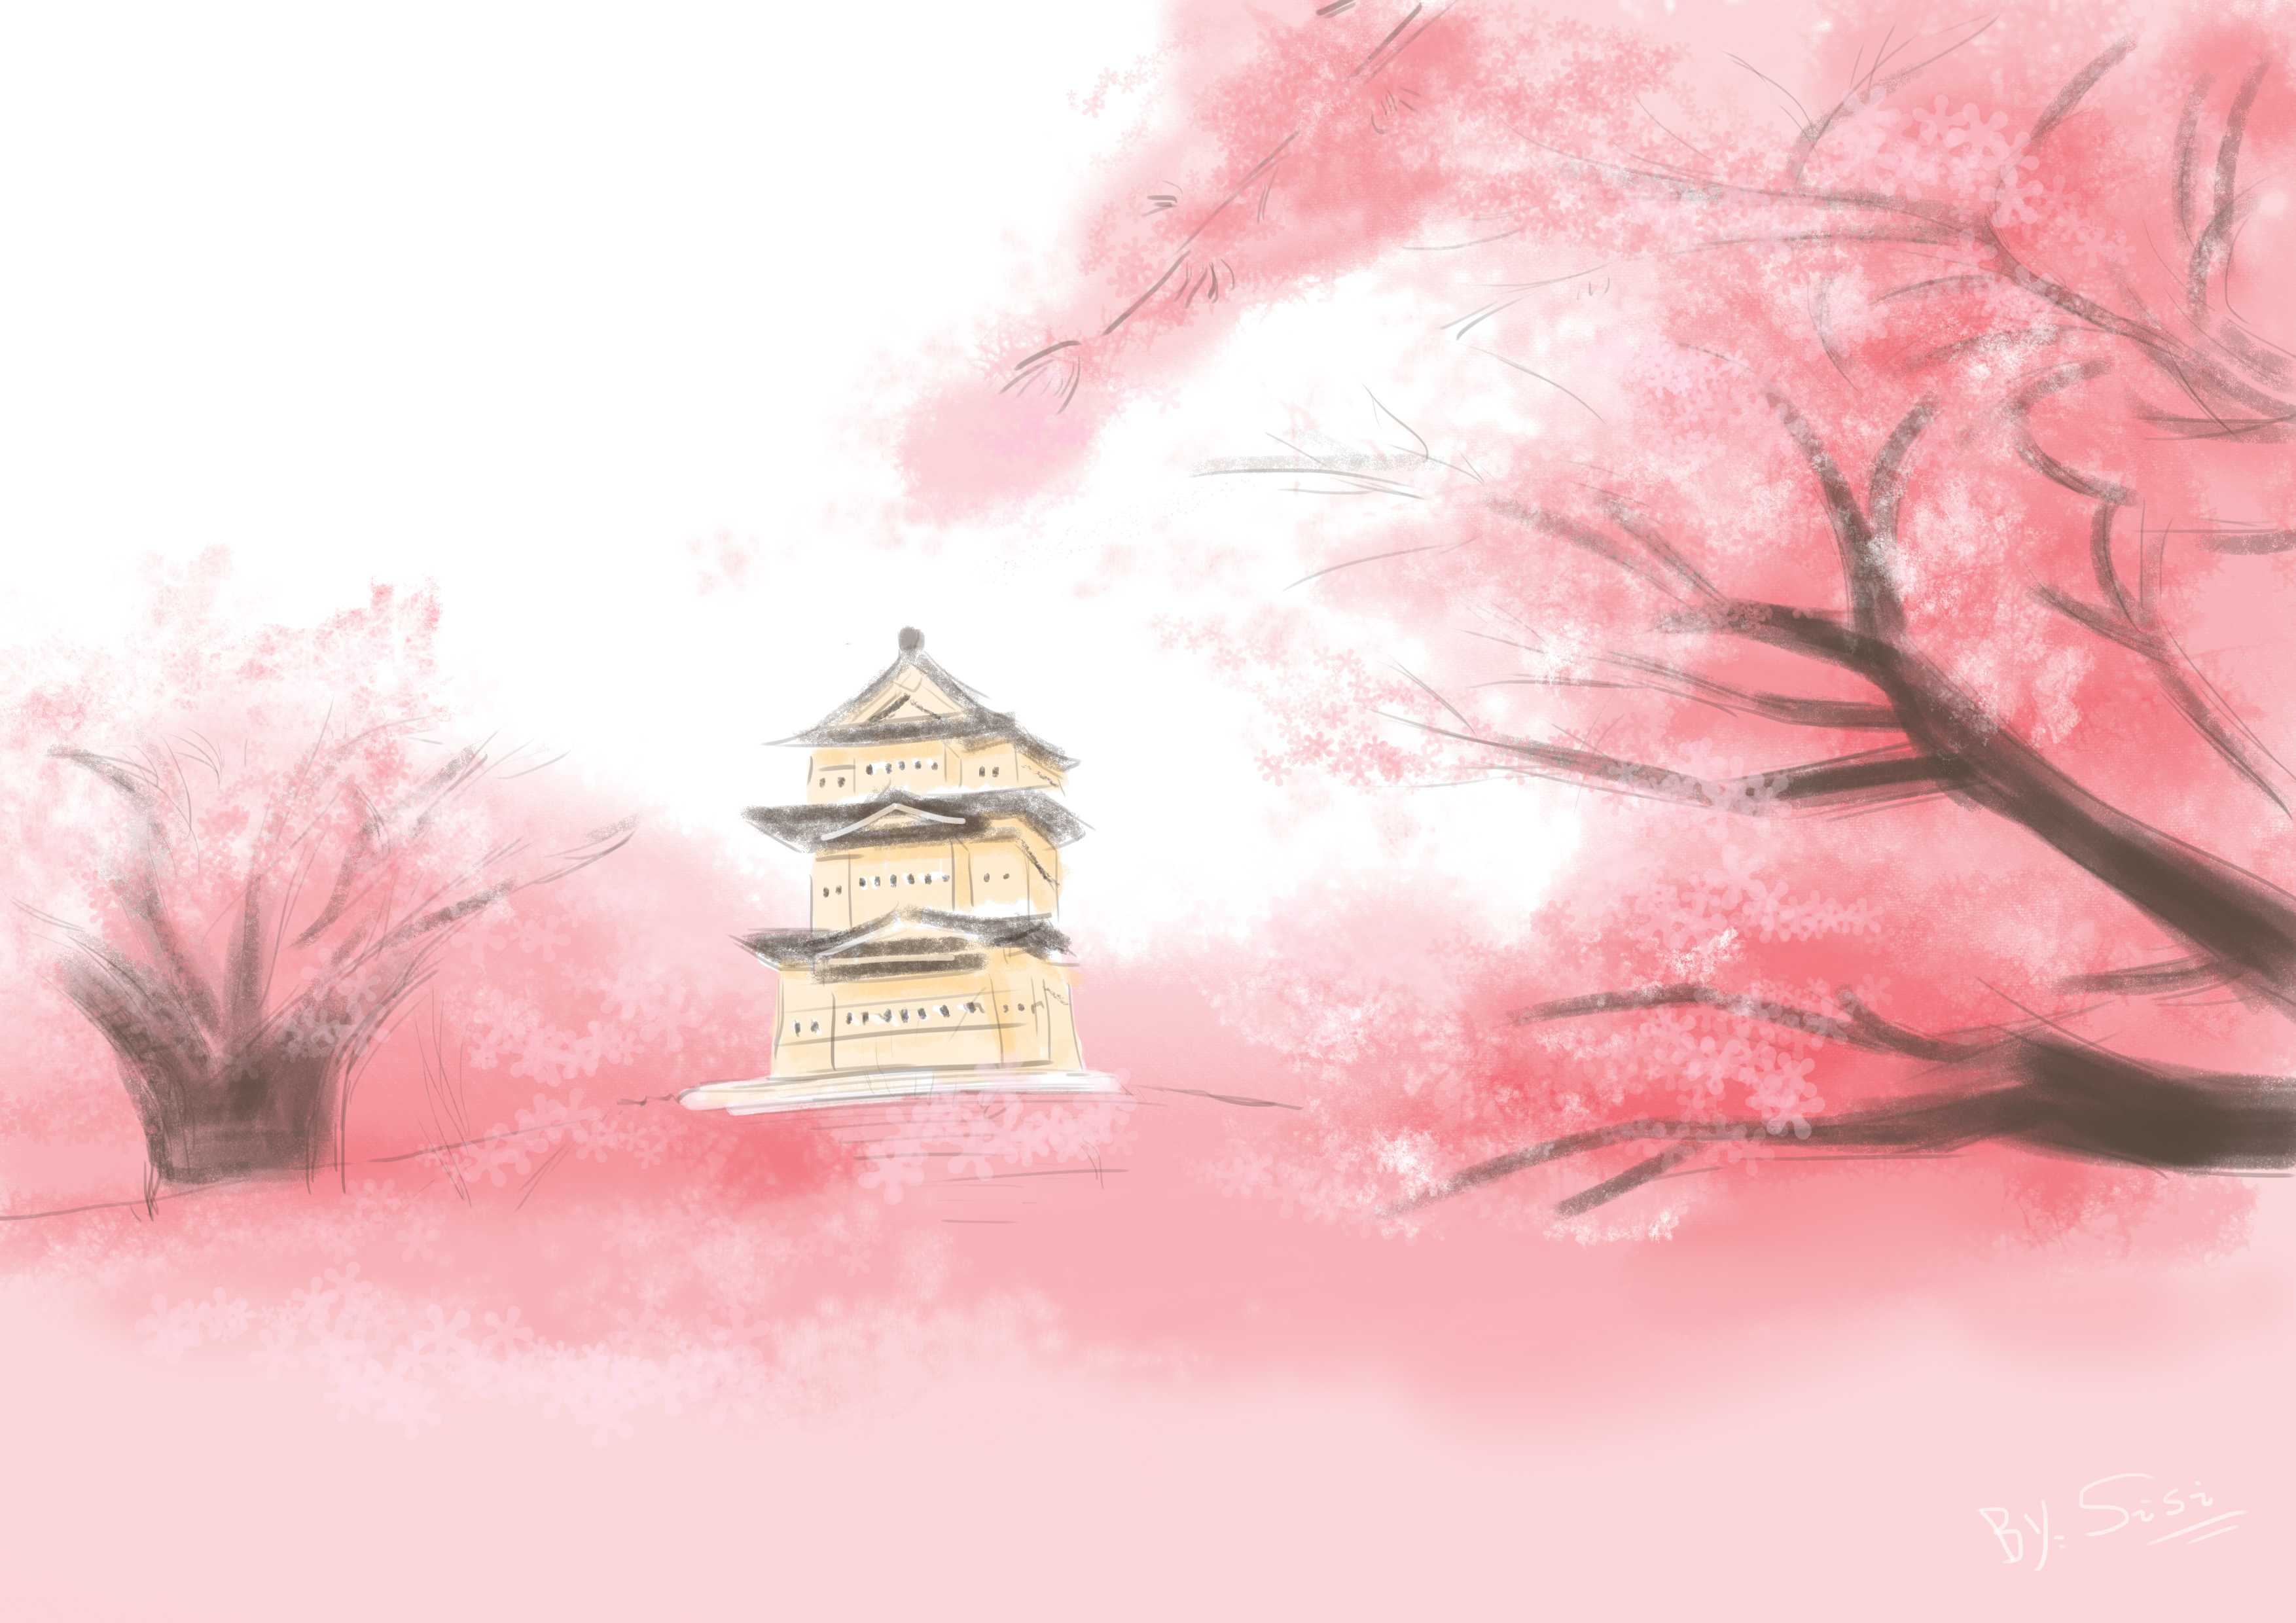 日本:樱花 日本被称为樱之国度,民间对樱花的迷恋程